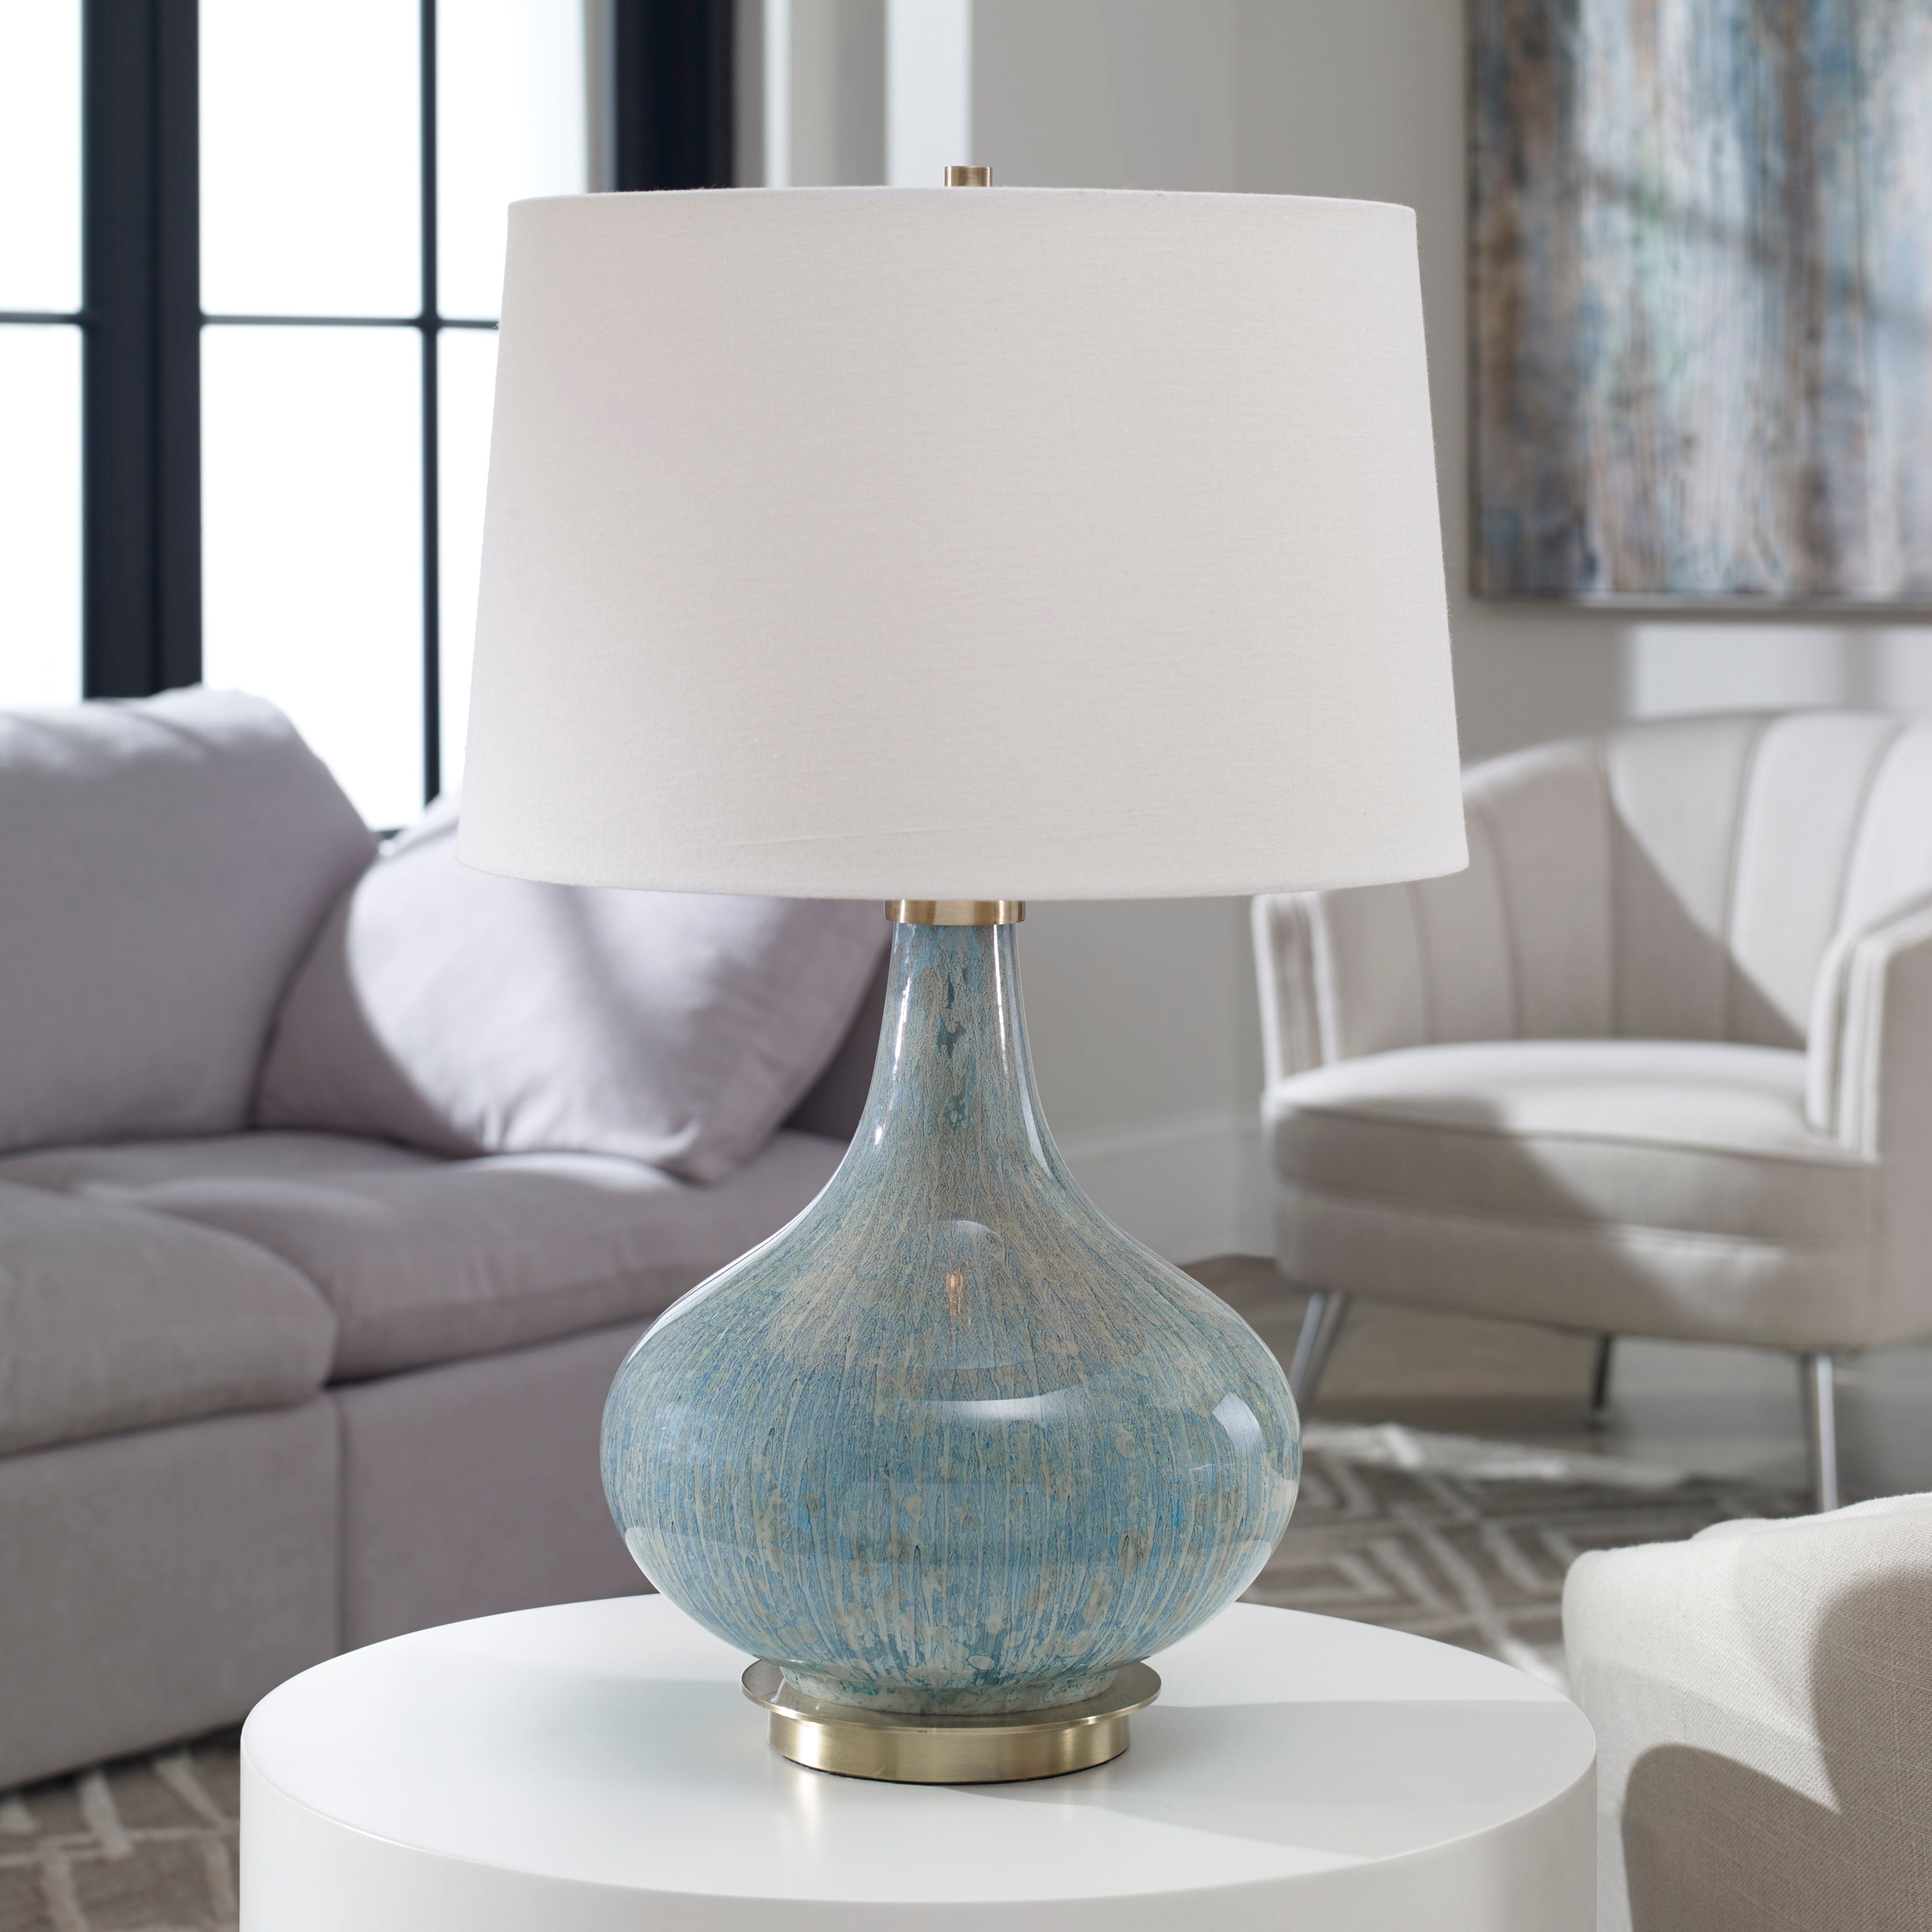 Celinda - Glass Lamp - Blue Gray